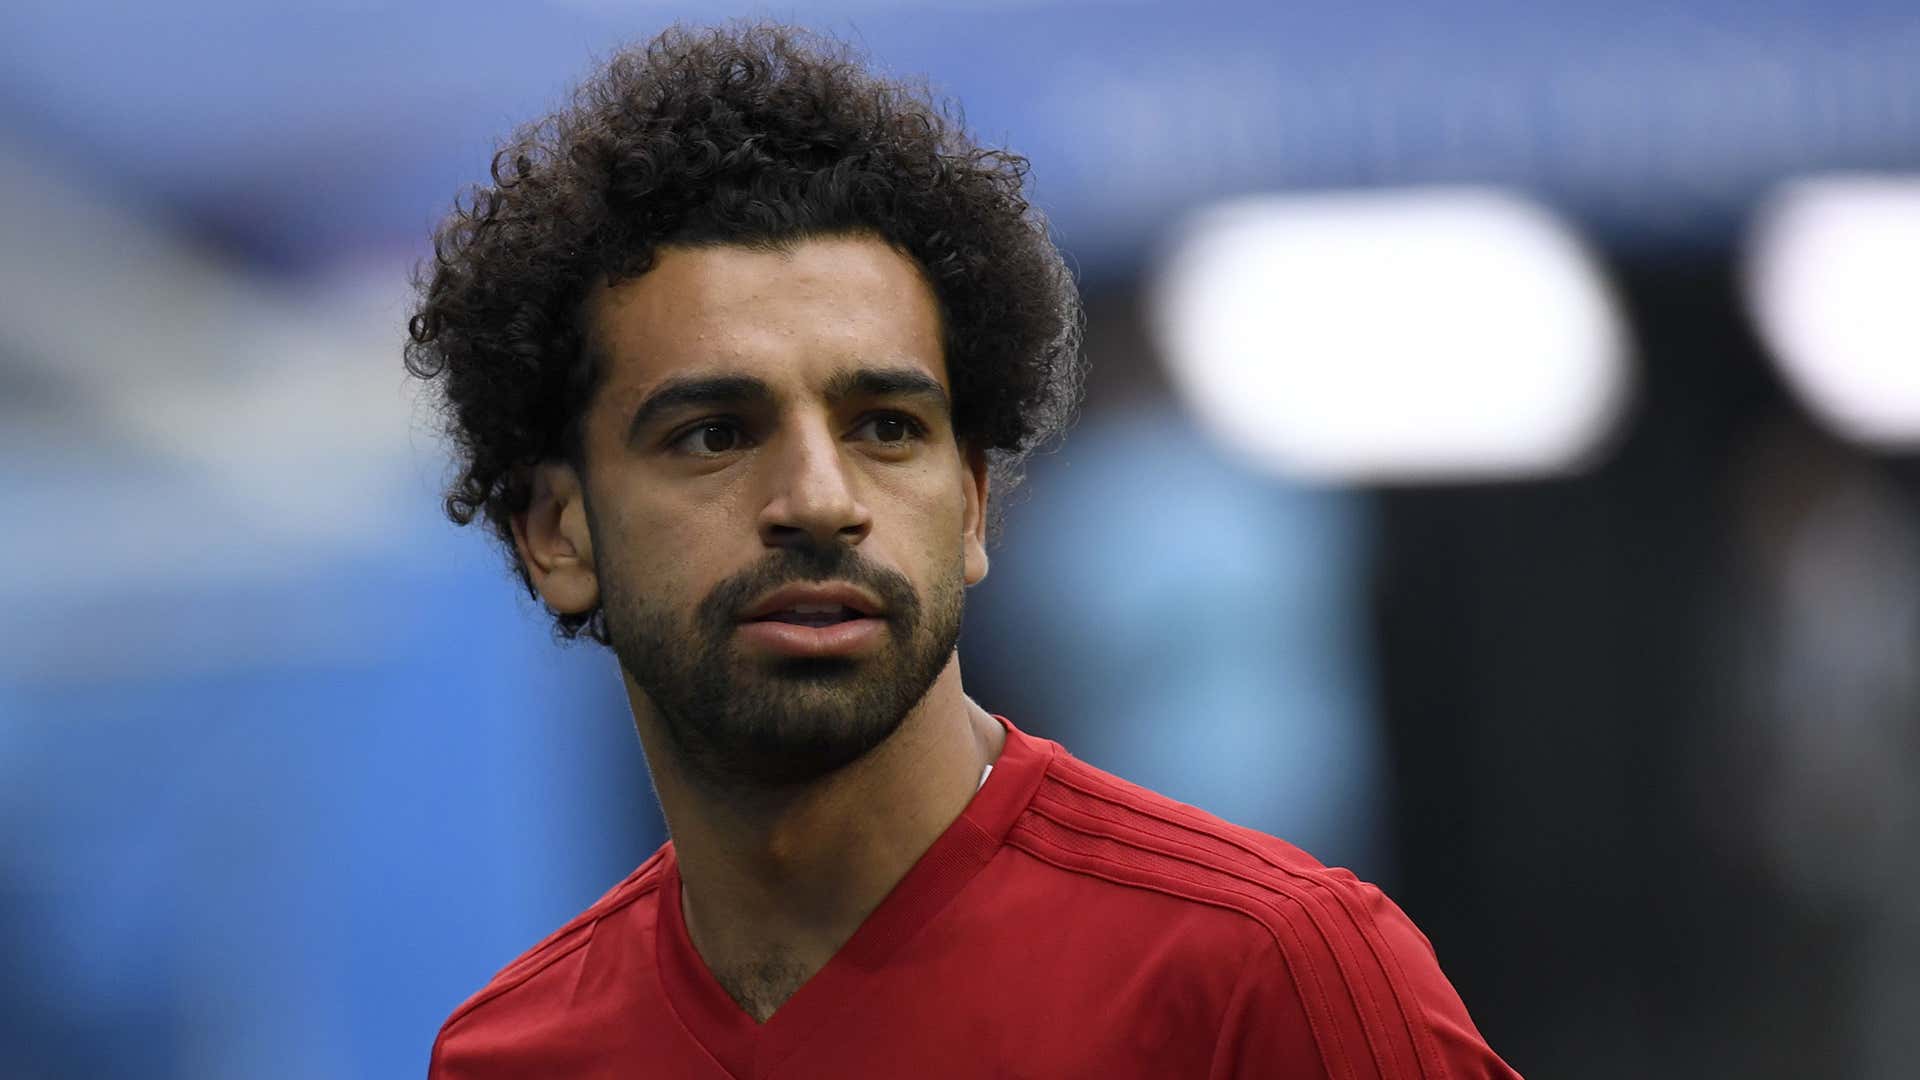 Mohamed Salah Egypt World Cup 2018